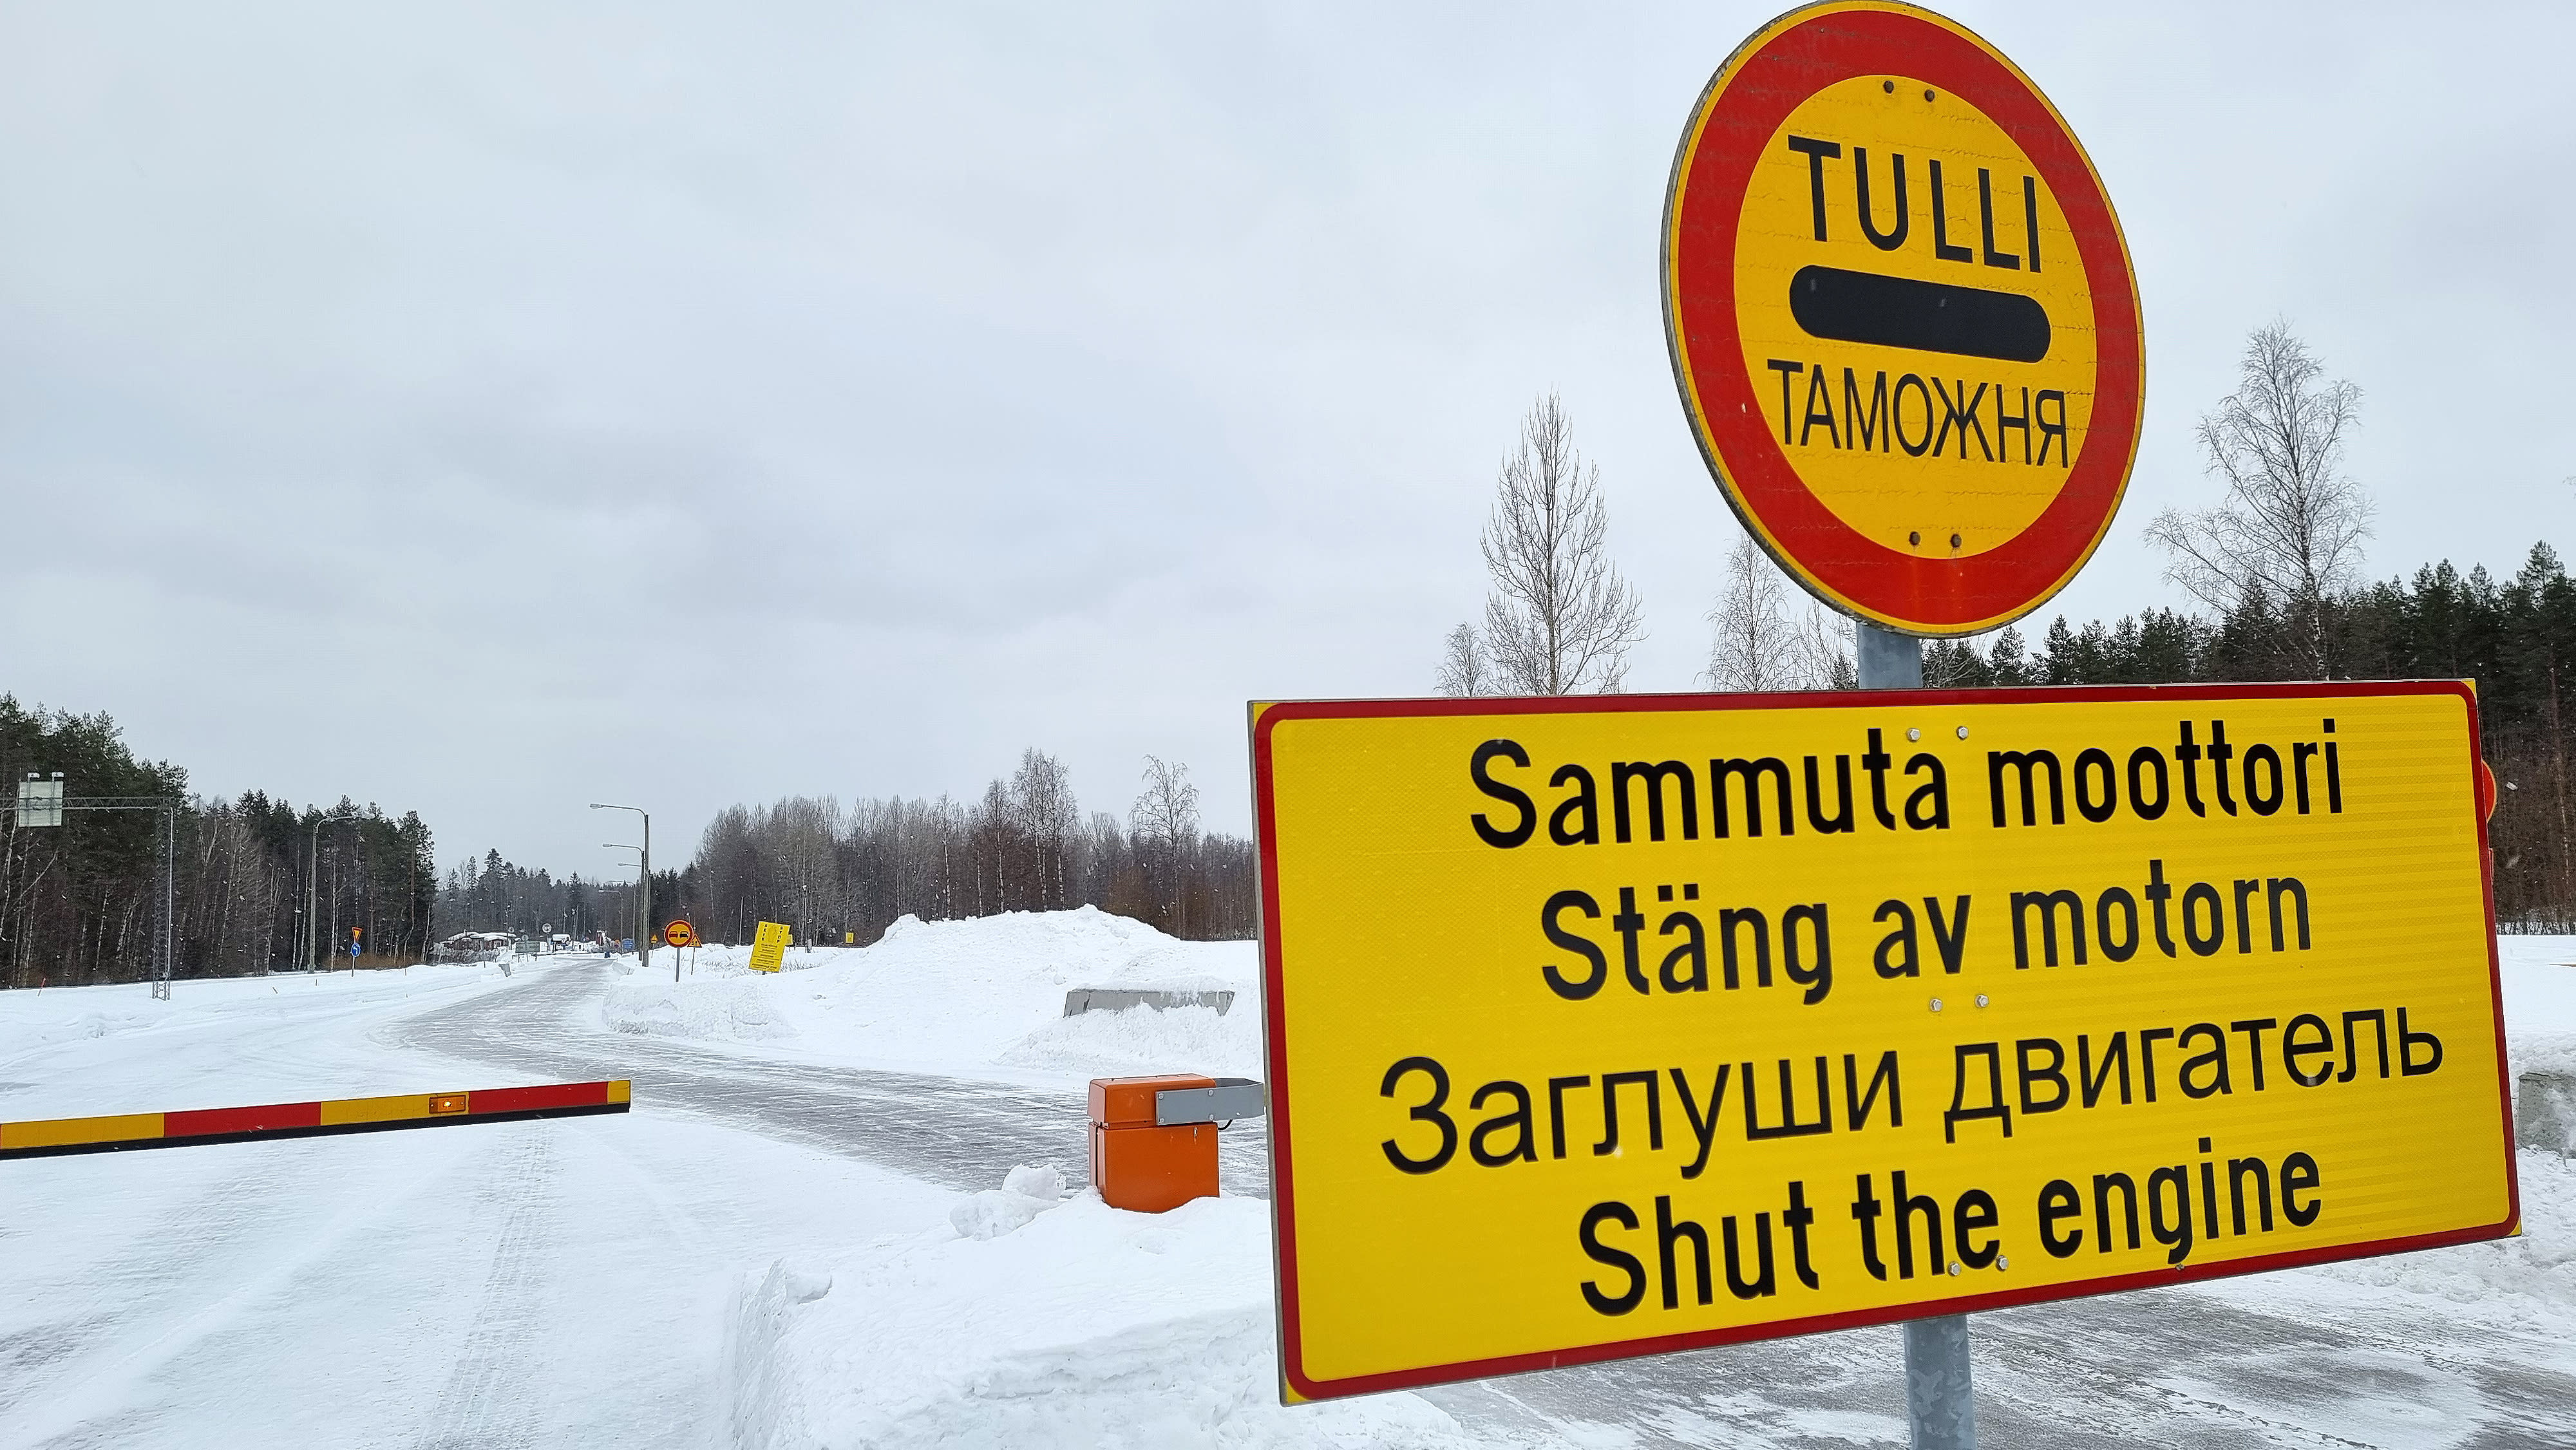 يجد موقع Yle أن روسيا تتعقب الزوار الفنلنديين باستخدام رموز IMEI للهواتف الذكية